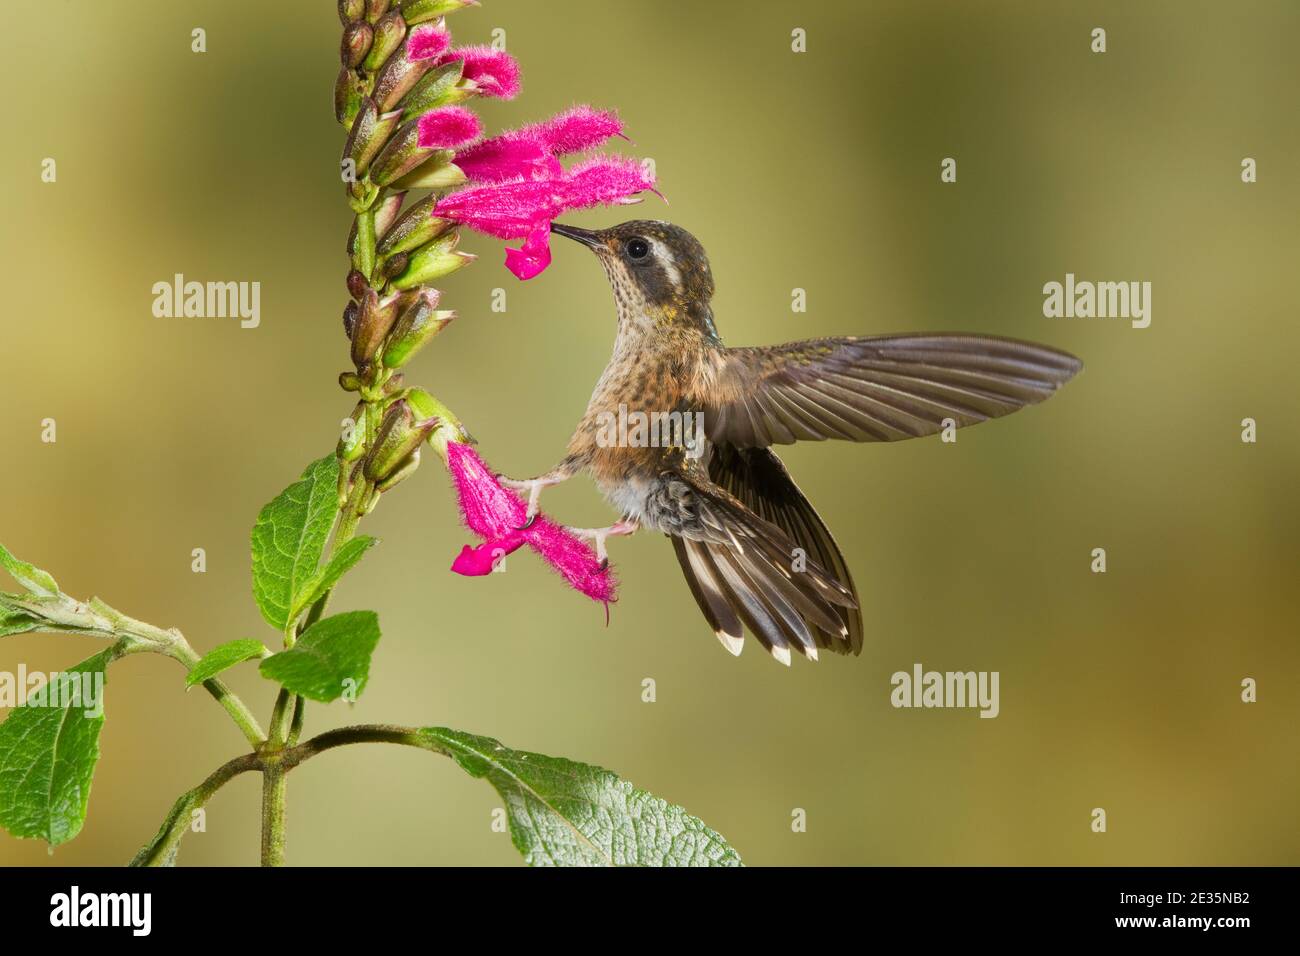 Gesprenkelte Kolibri, Adelomyia melanogenys, Fütterung an Salvia tortuosa Blume, Lamiaceae. Stockfoto